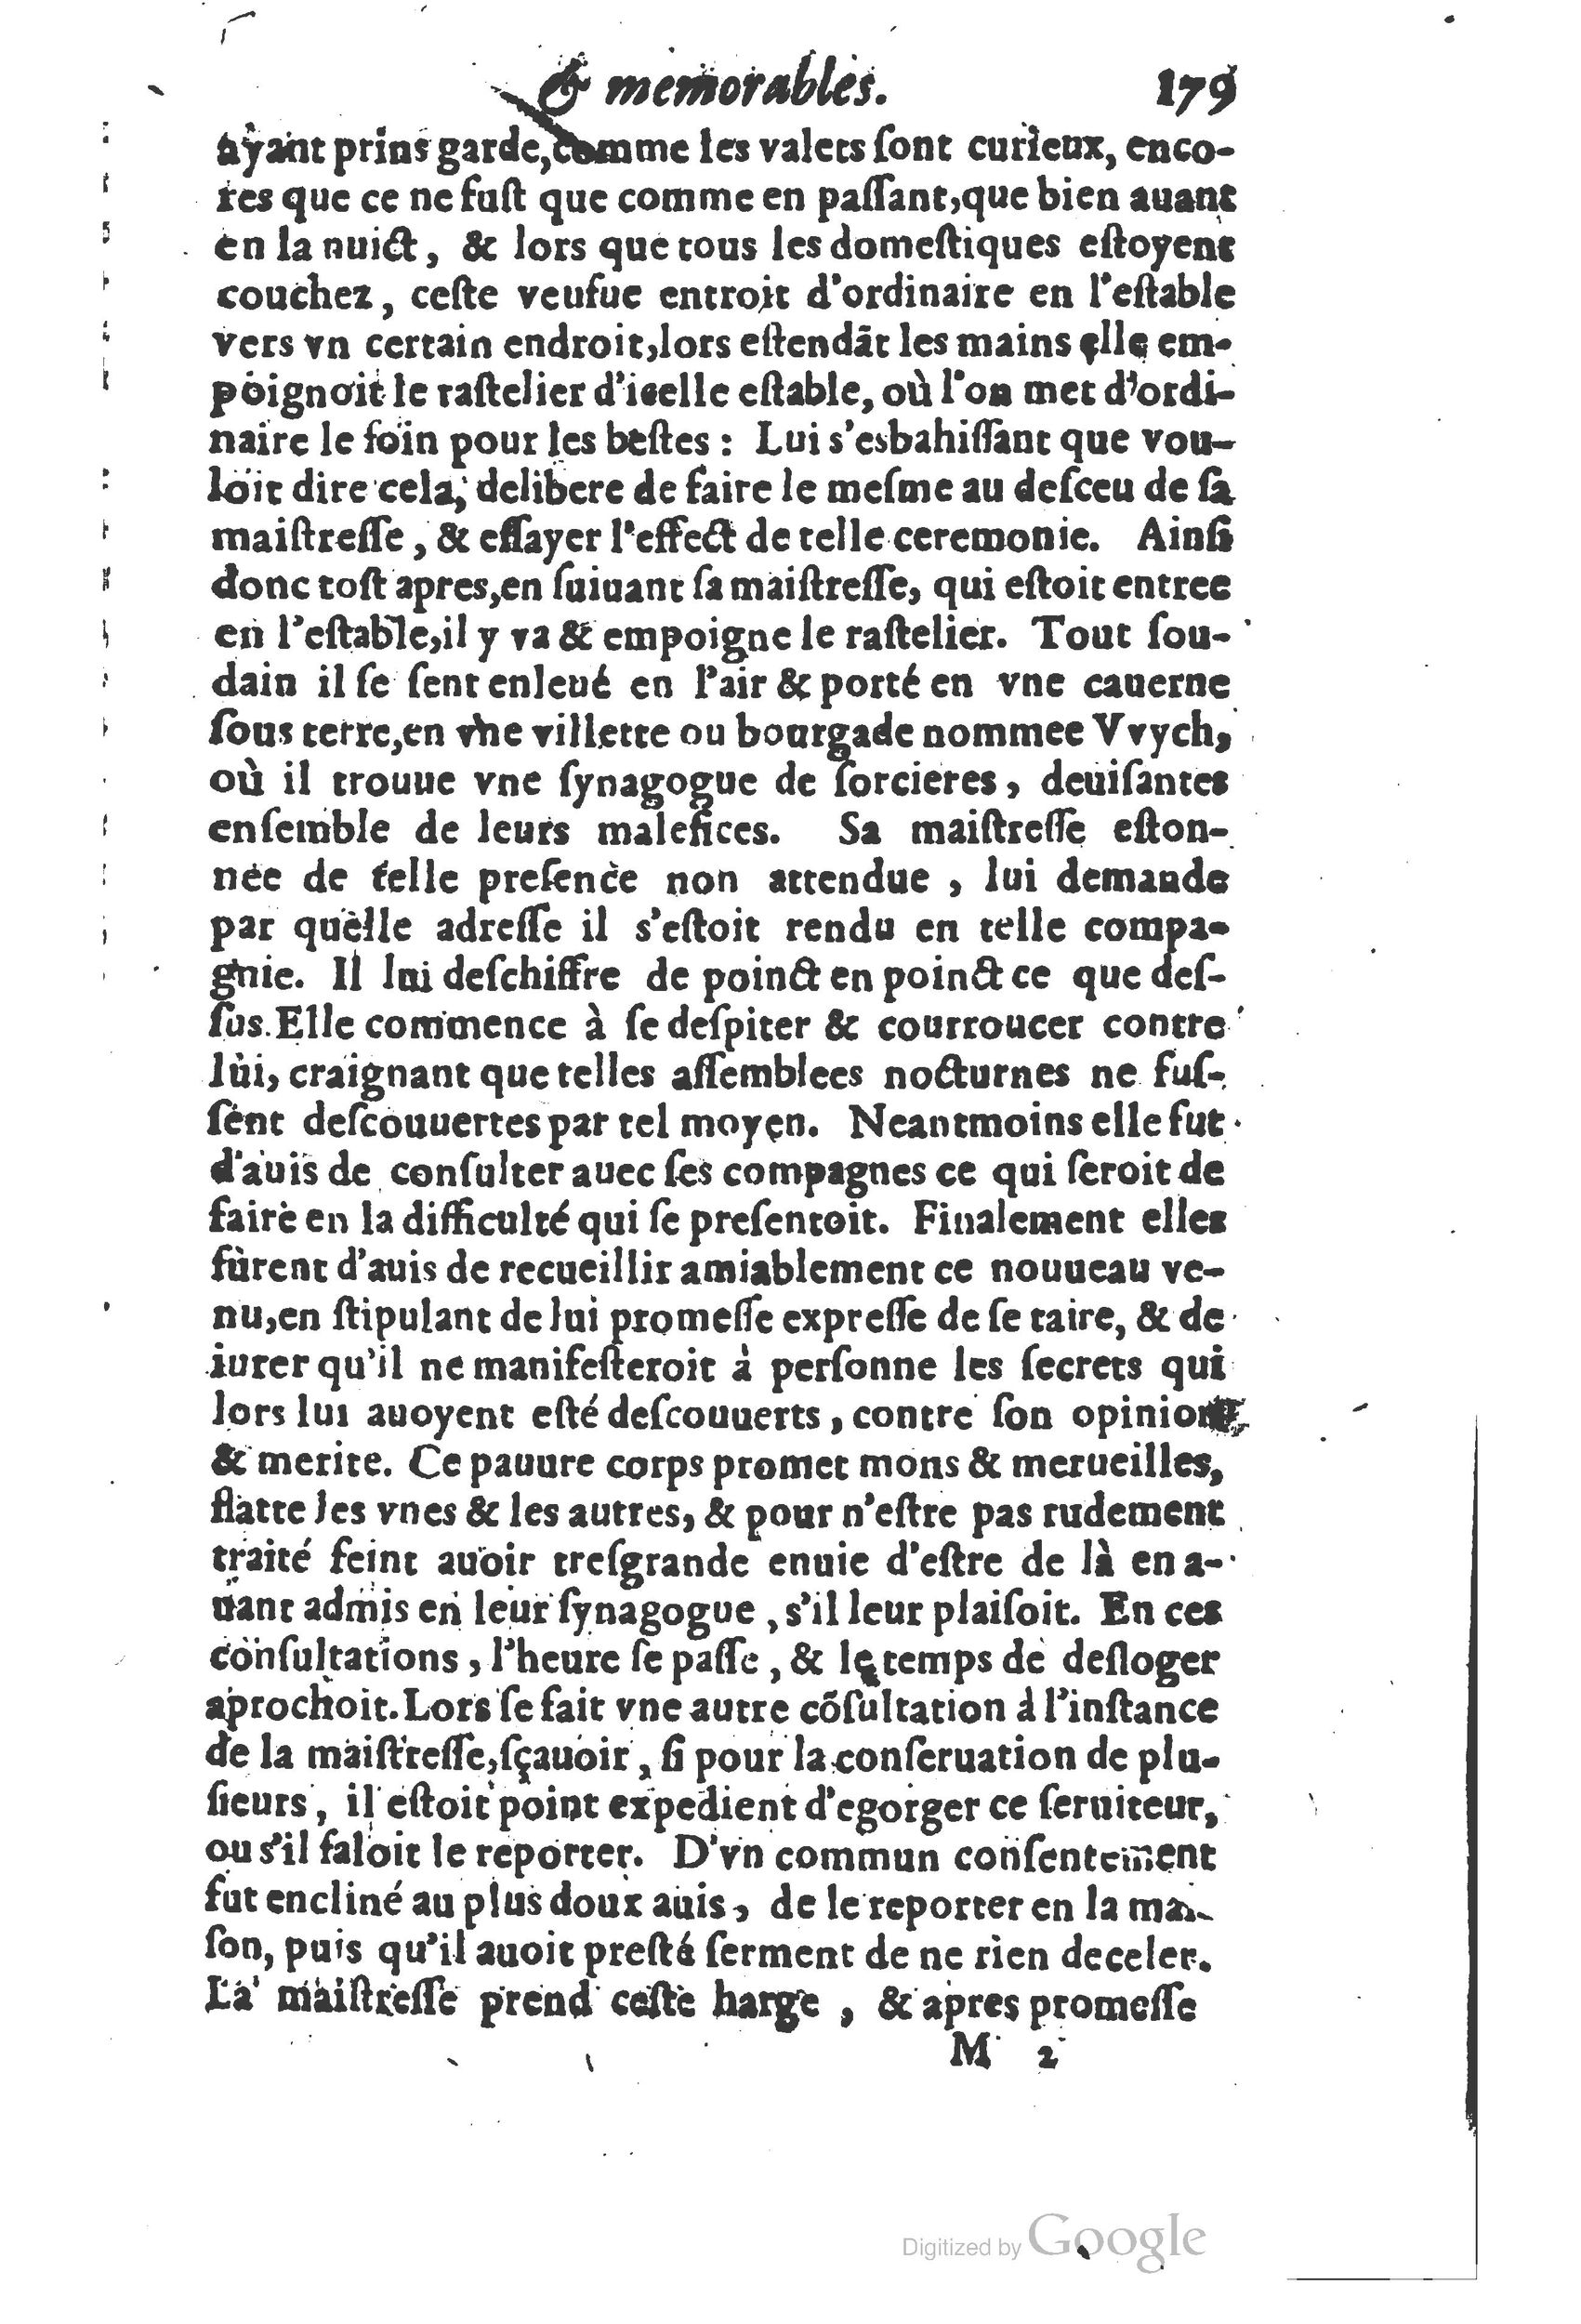 1610 Trésor d’histoires admirables et mémorables de nostre temps Marceau Princeton_Page_0200.jpg